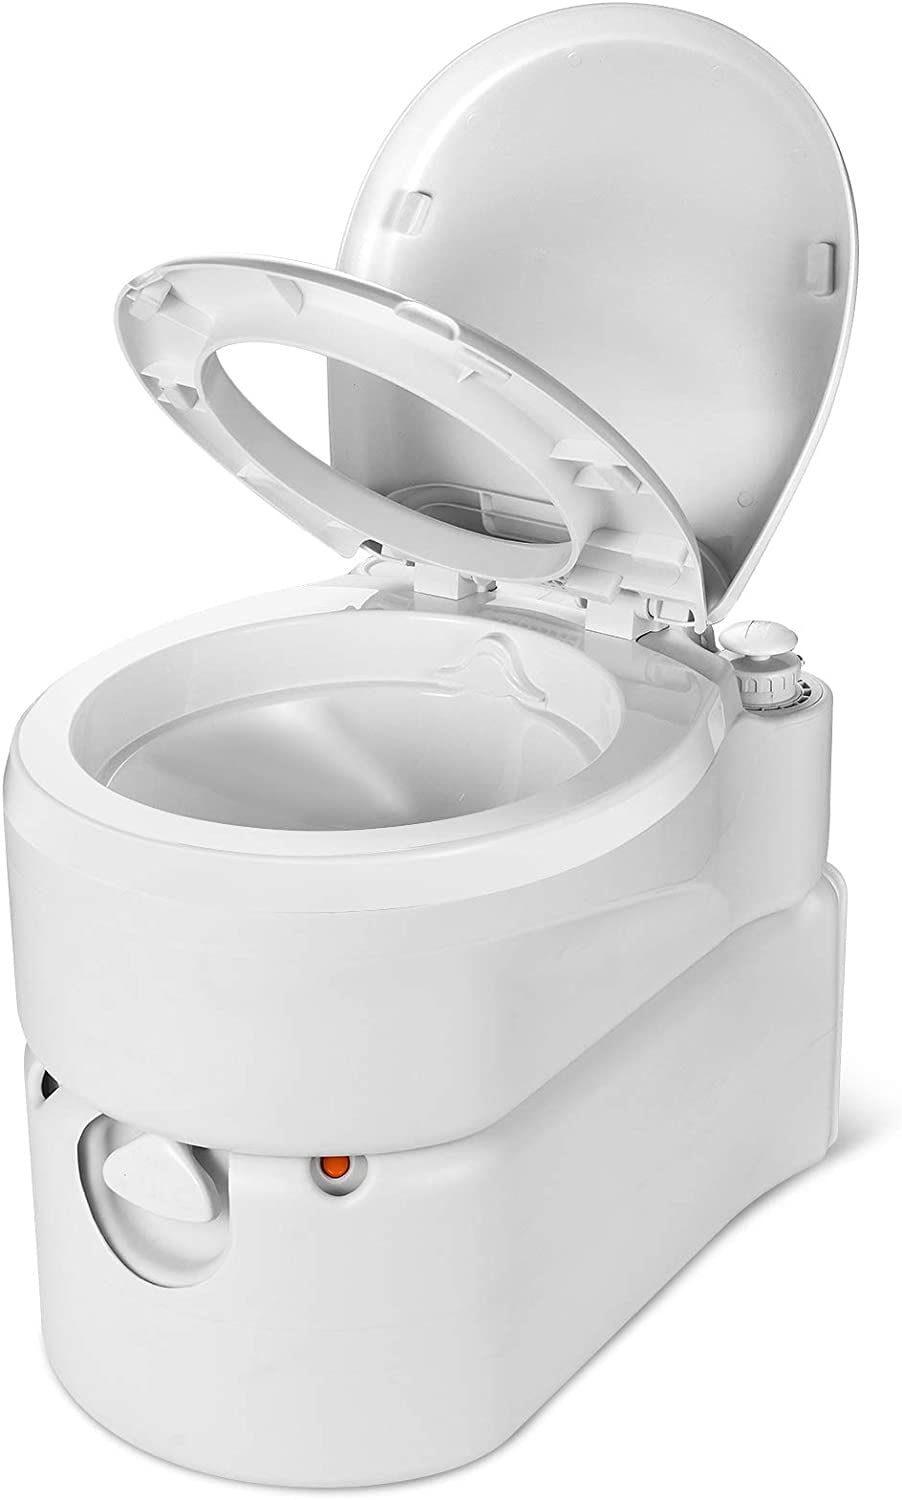 24L Toilette Portable 6 Gallon Égaliser Voyage Camping Extérieur / Indoor